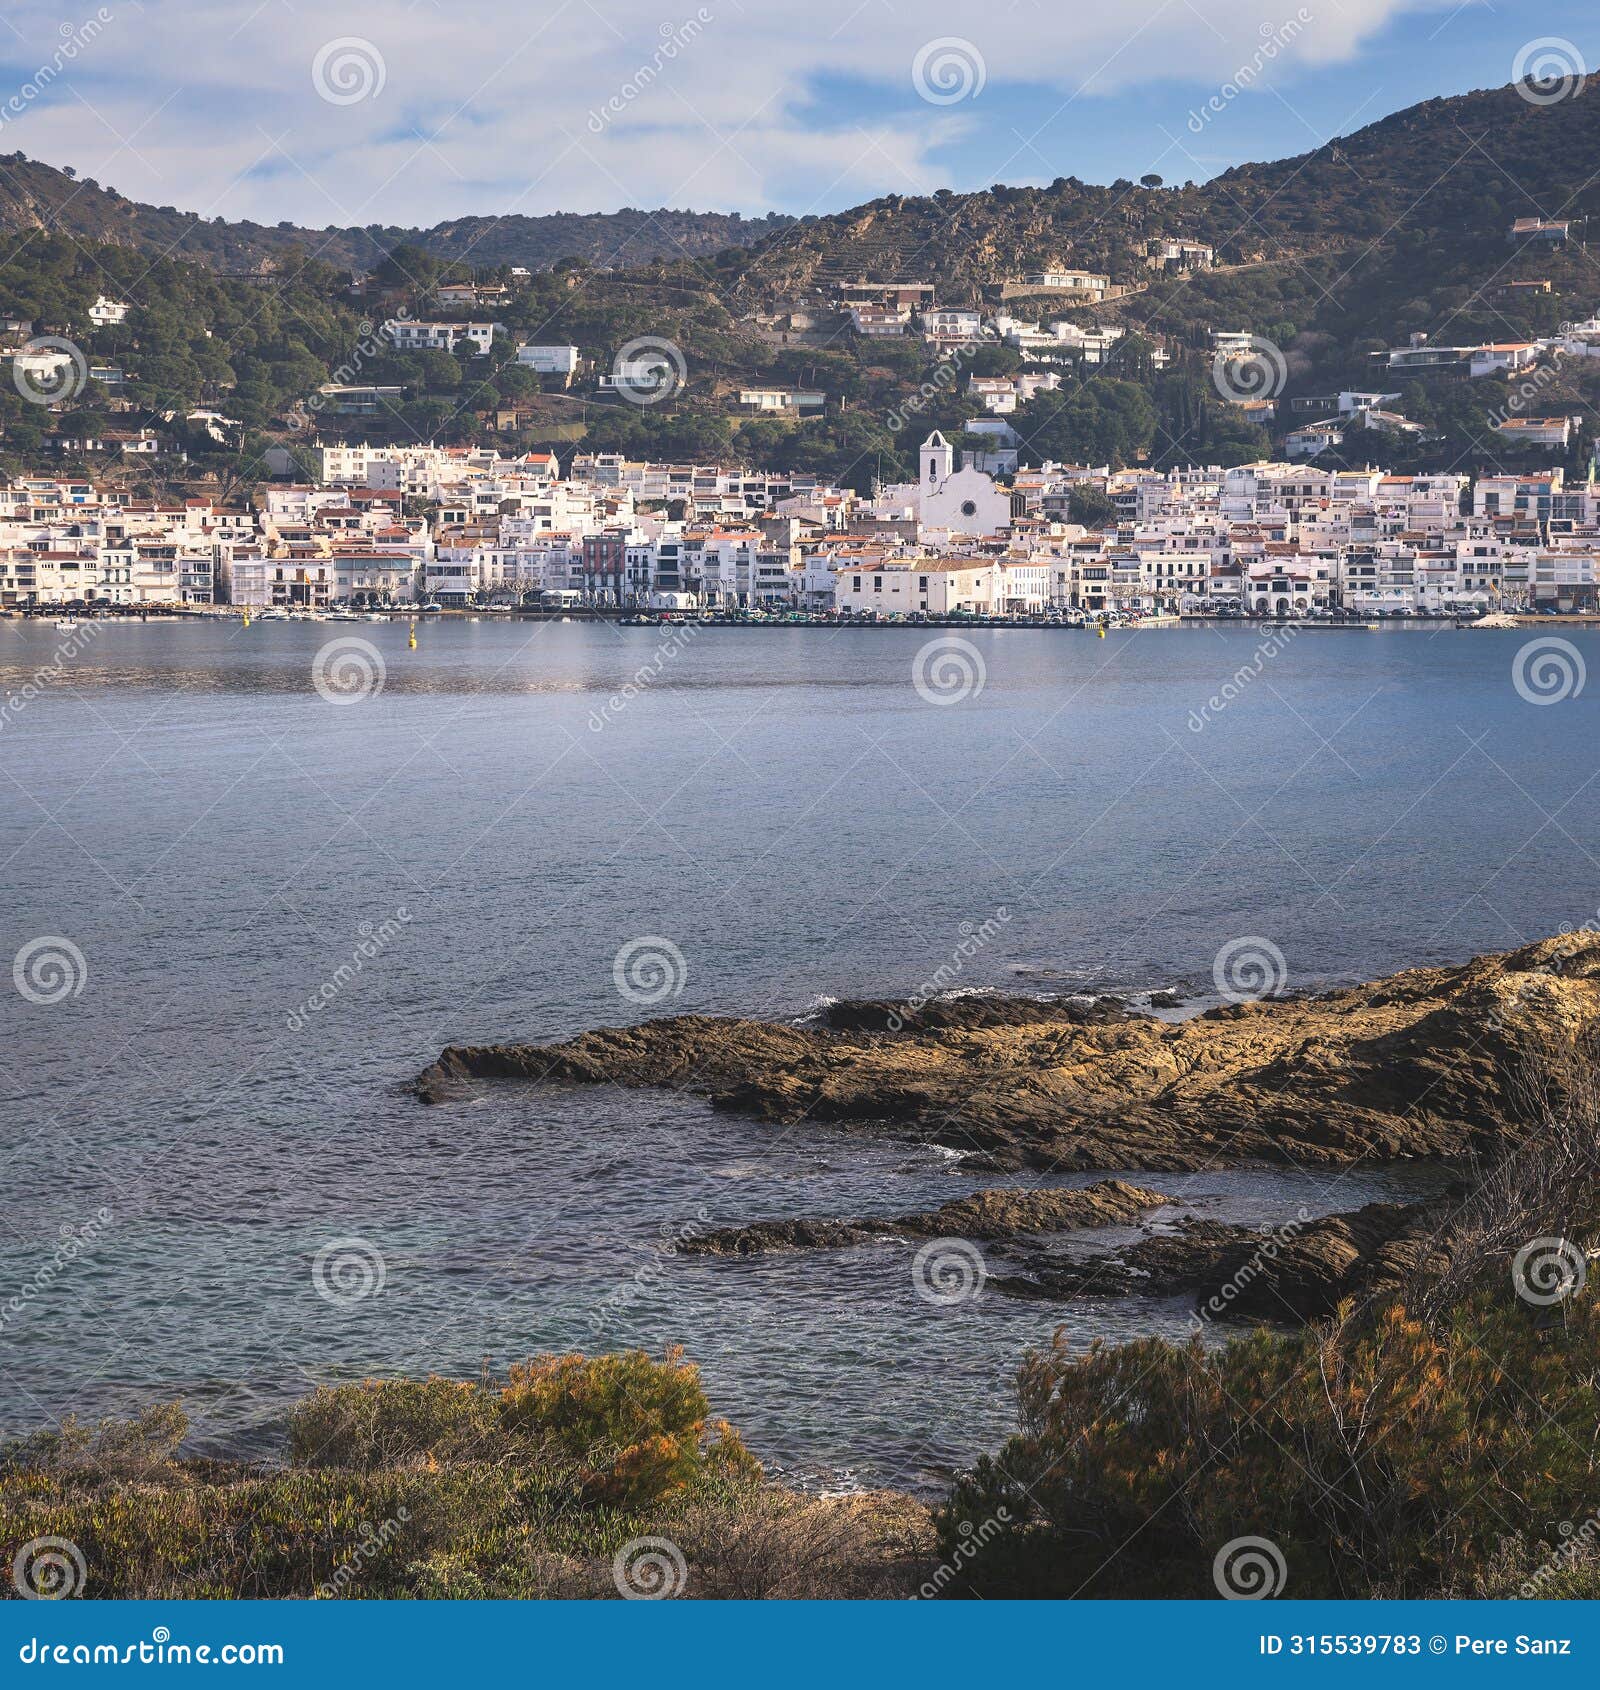 view of the beautifull village of port de la selva in catalonia